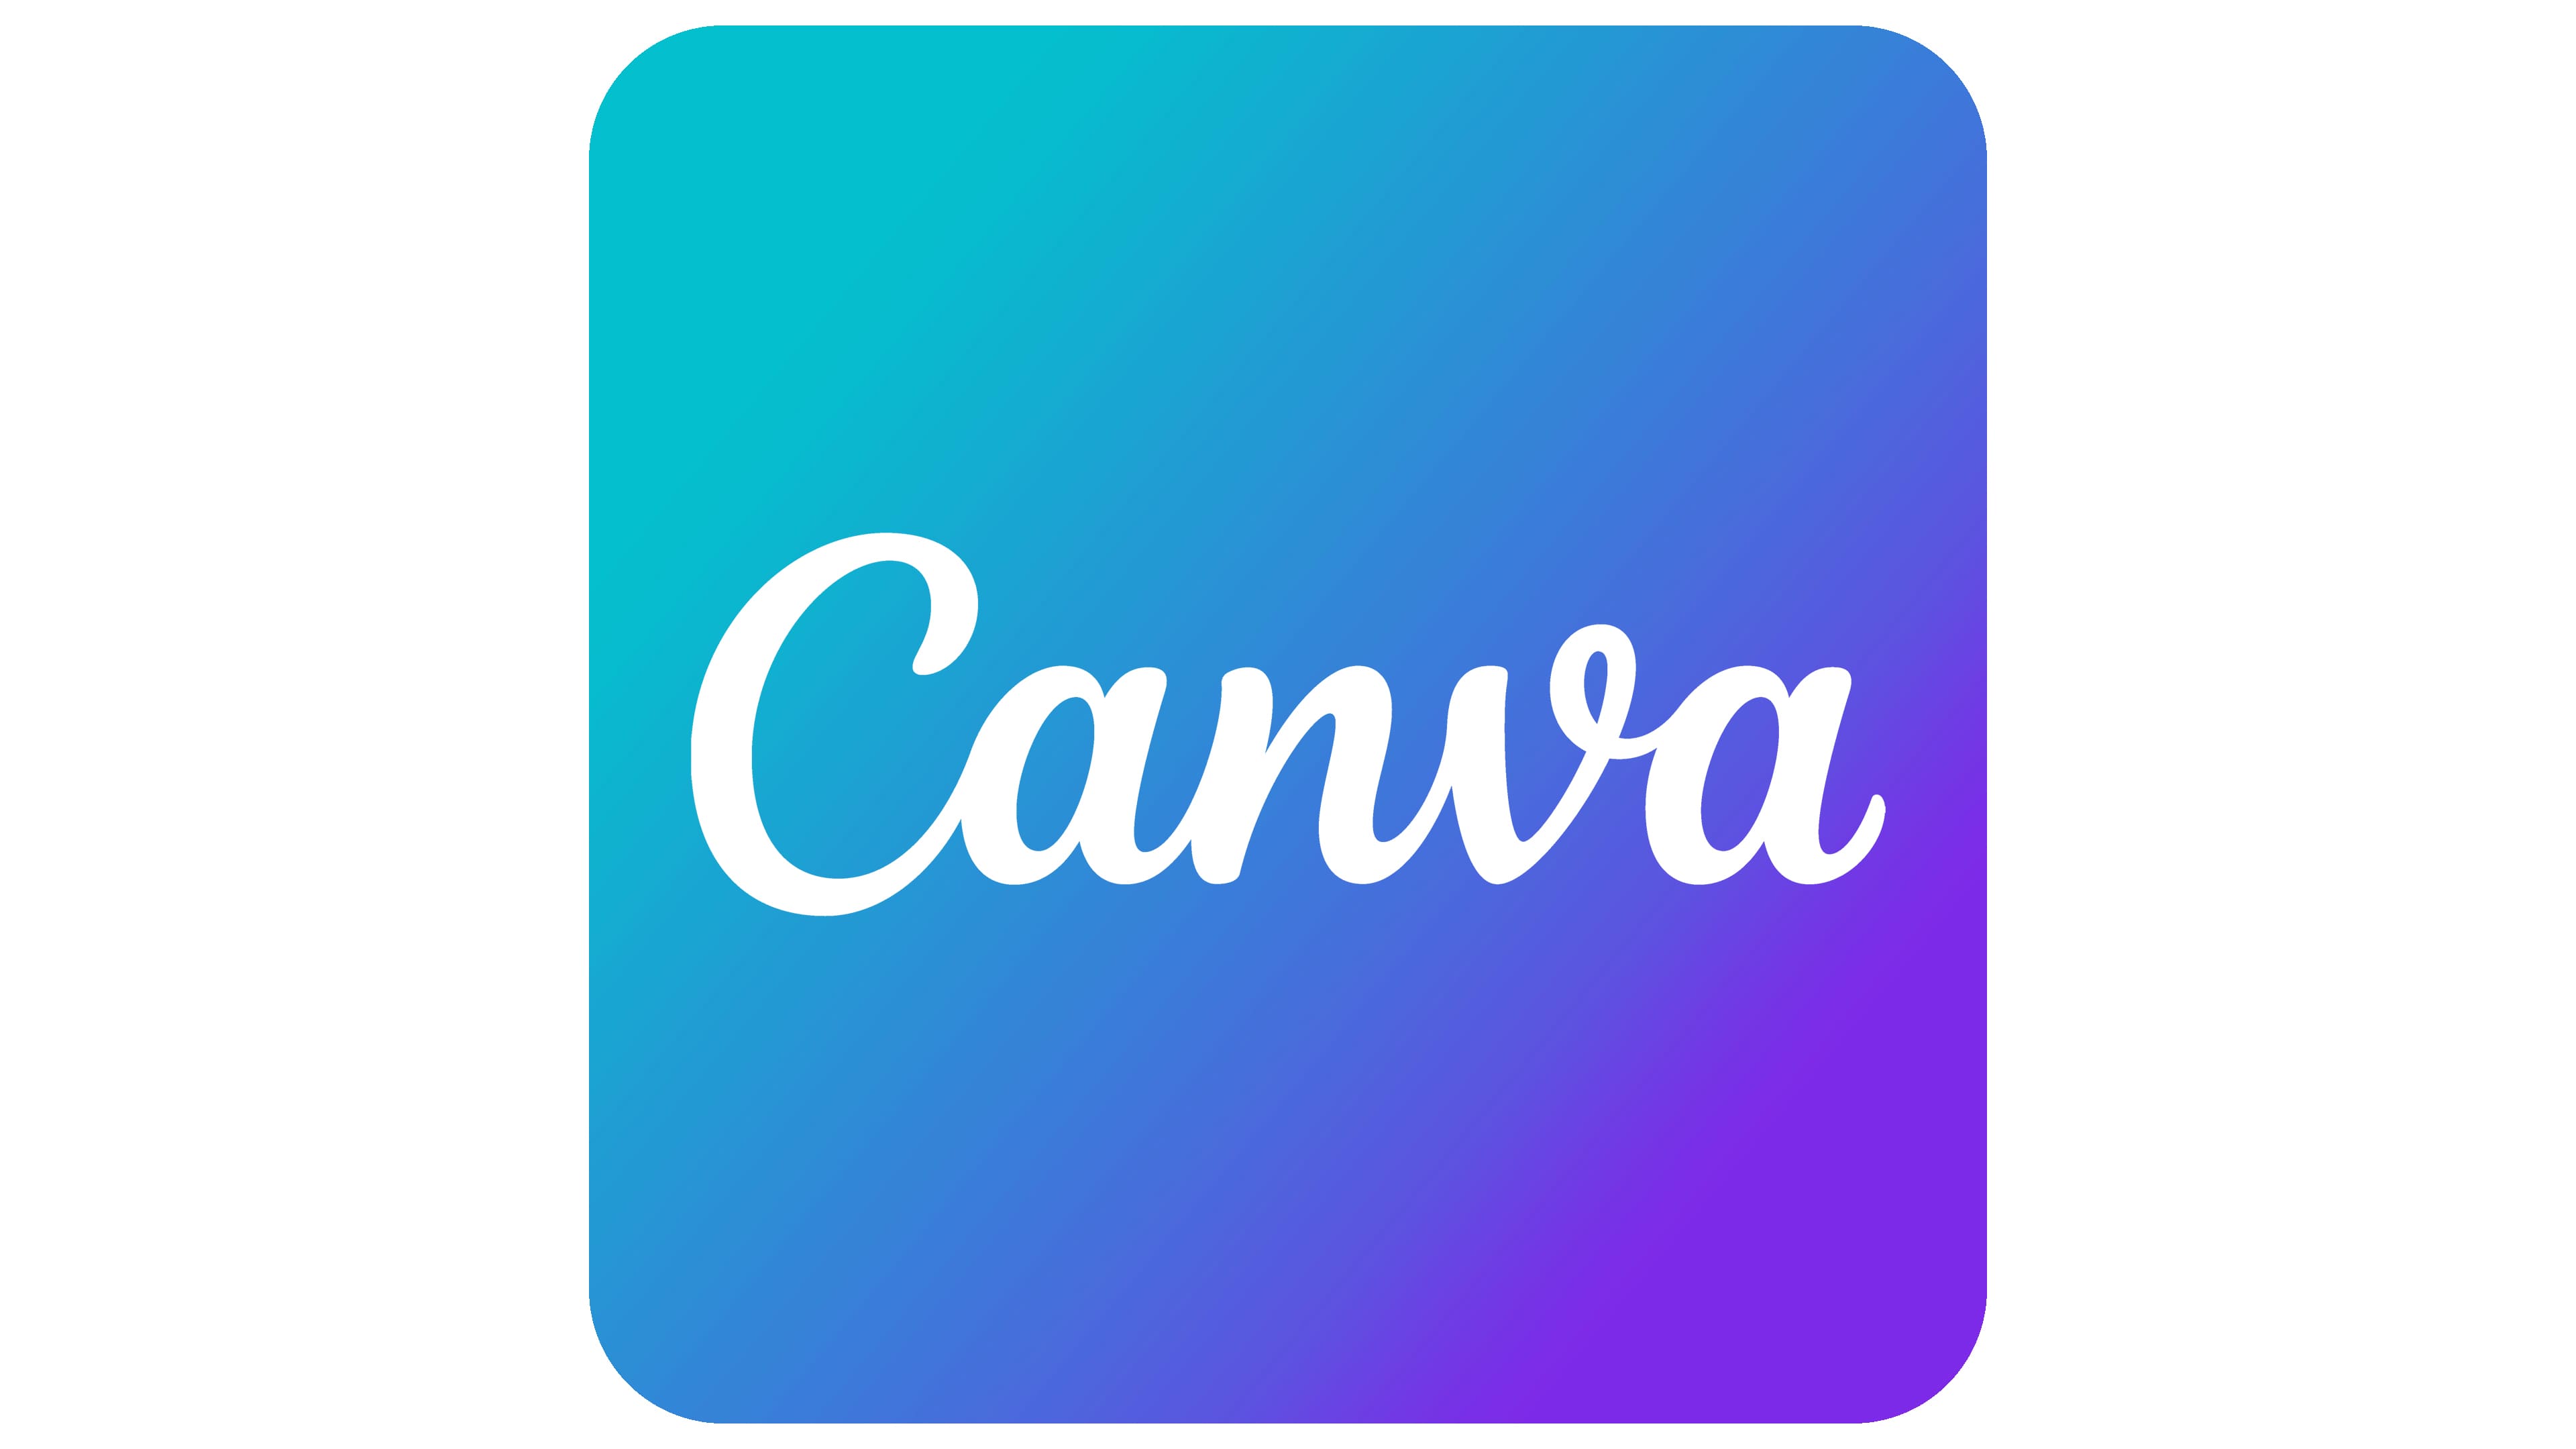 La plataforma de diseño gráfico de Canva con un nuevo logo - LOGOS de MARCAS